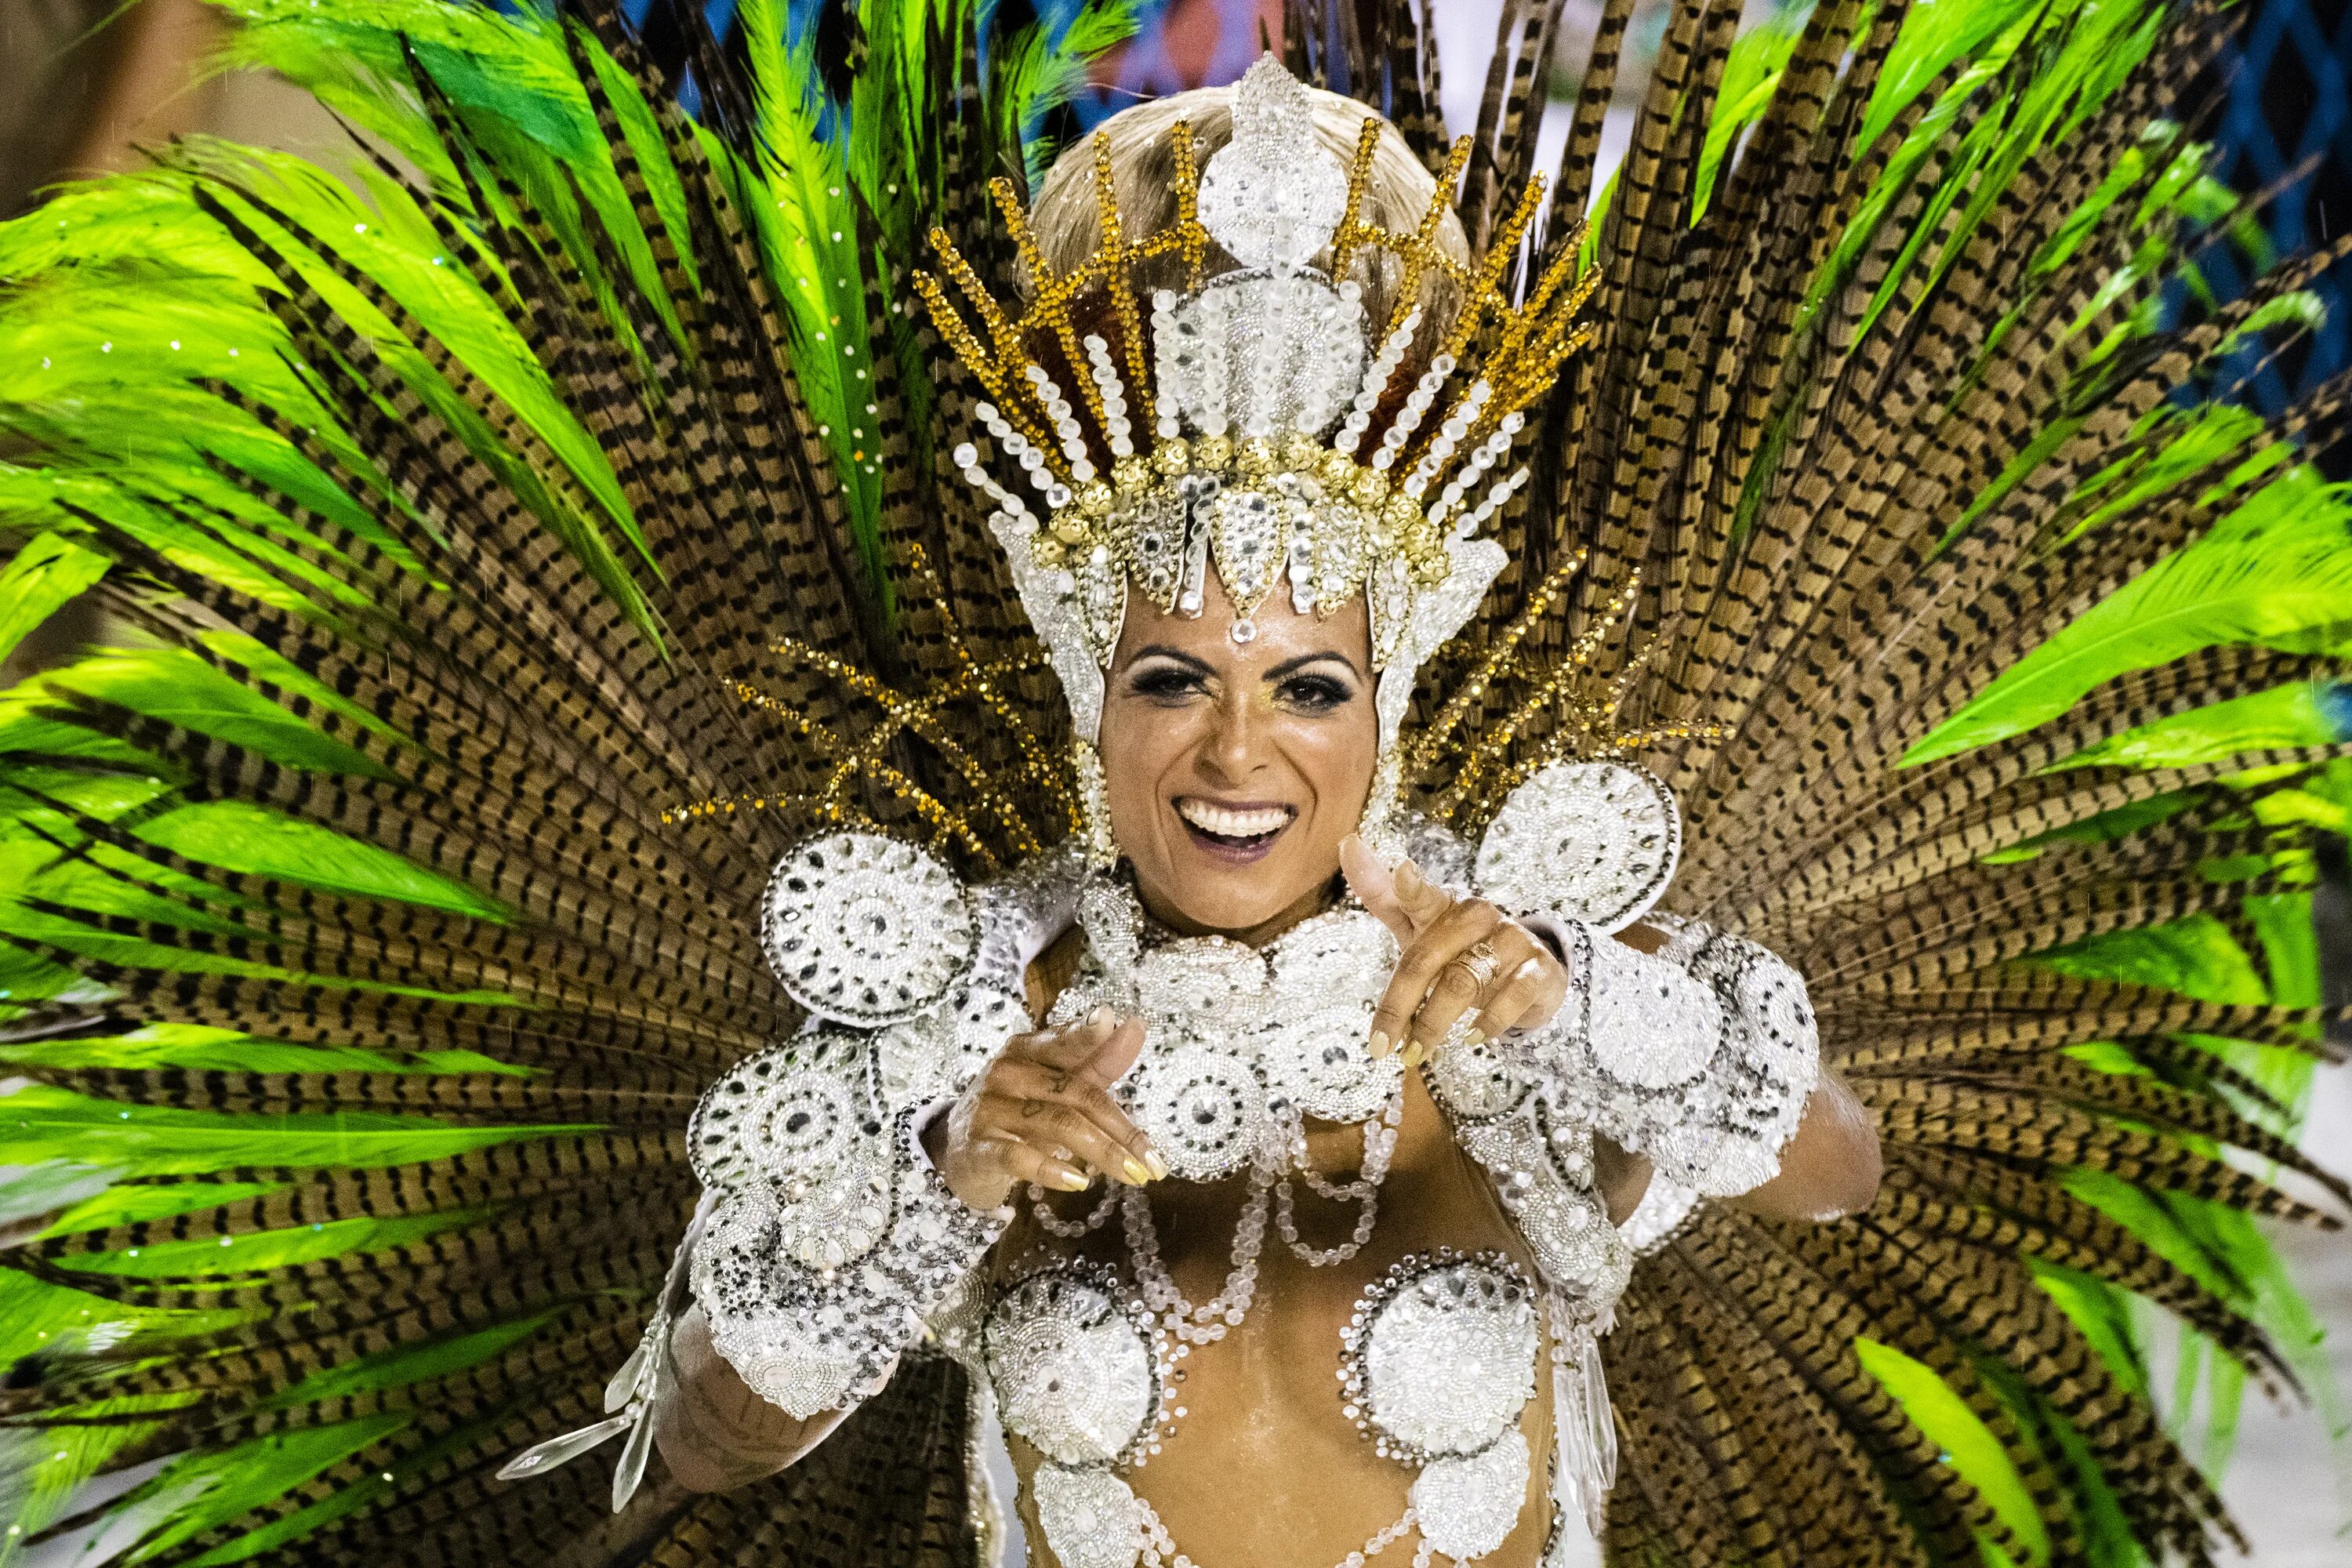 Бразильские фонки 1 час. Карнавал в Рио-де-Жанейро. Карнавал в Рио-де-Жанейро 2022. Карнавал в Рио-де-Жанейро (бразильский карнавал). Карнавал Рио де Жанейро 2016.